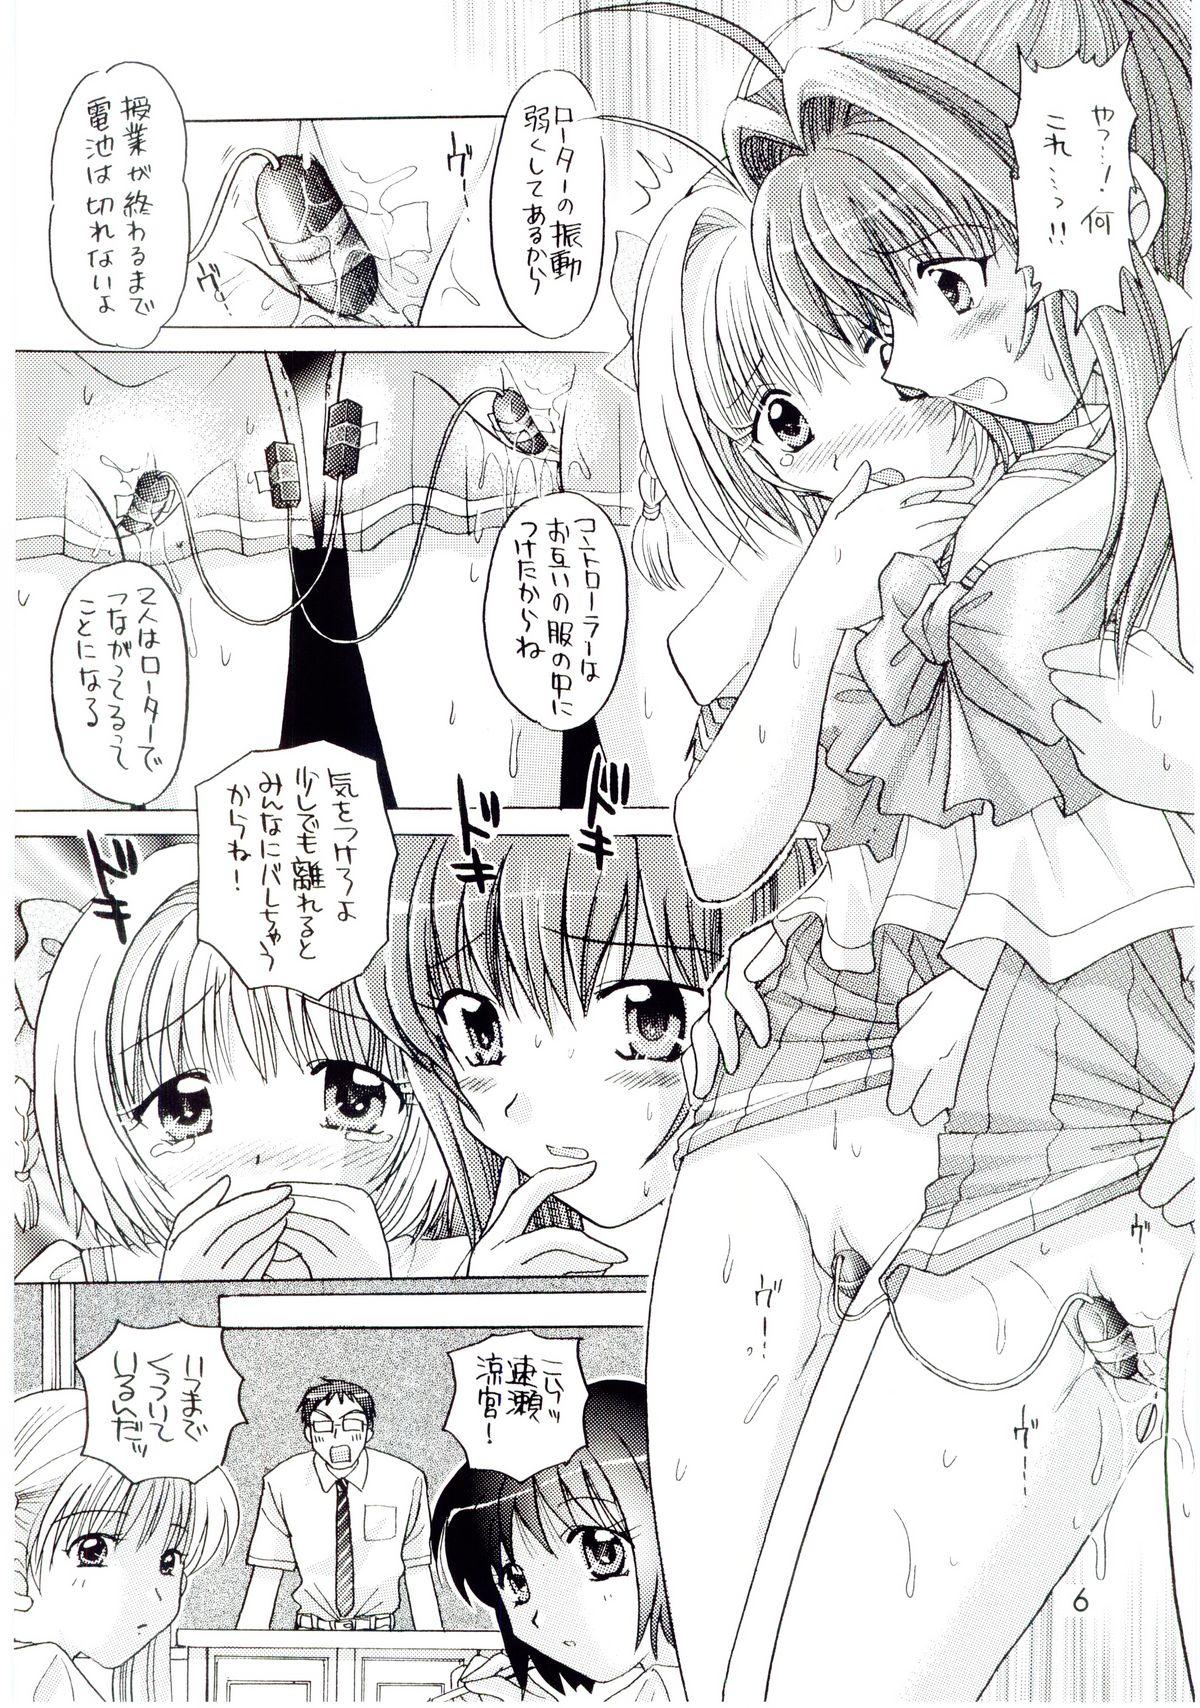 Cum On Face Kimi ga nozomu eien zettai zetsumei 2 - Kimi ga nozomu eien Putita - Page 5